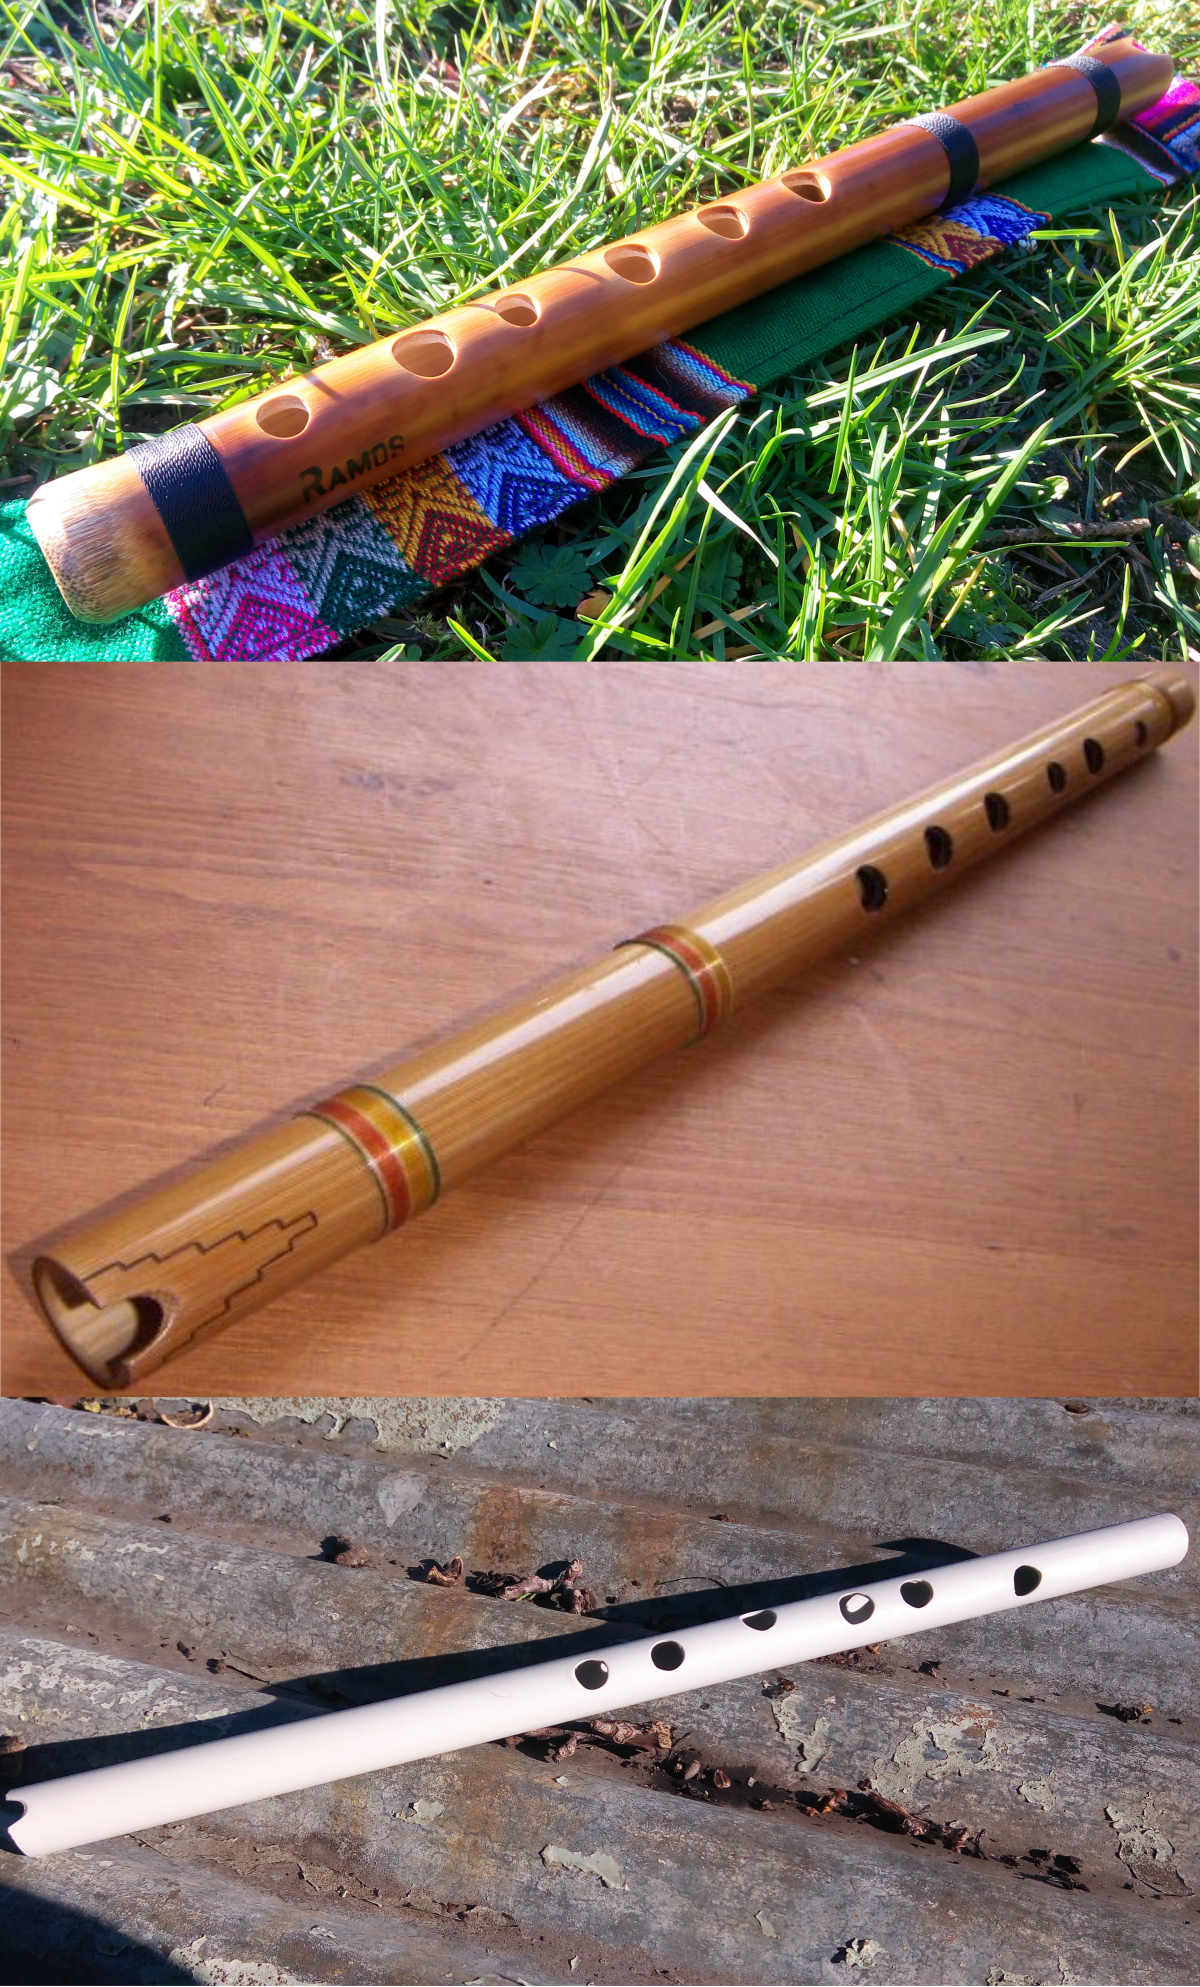 Retirer les bouchons de la flûte - Apprendre la flute traversiere